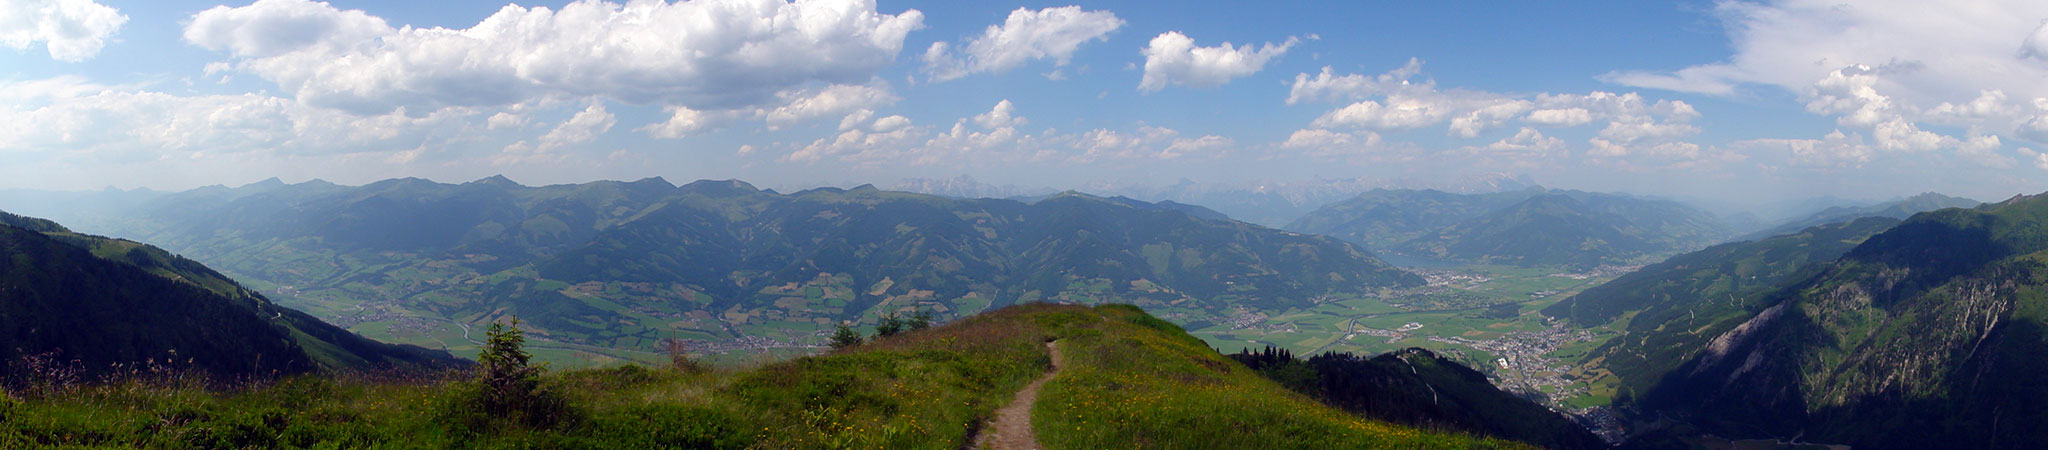 Arnoweg: Das Salzachtal im Pinzgau mit Zeller See und Kaprun